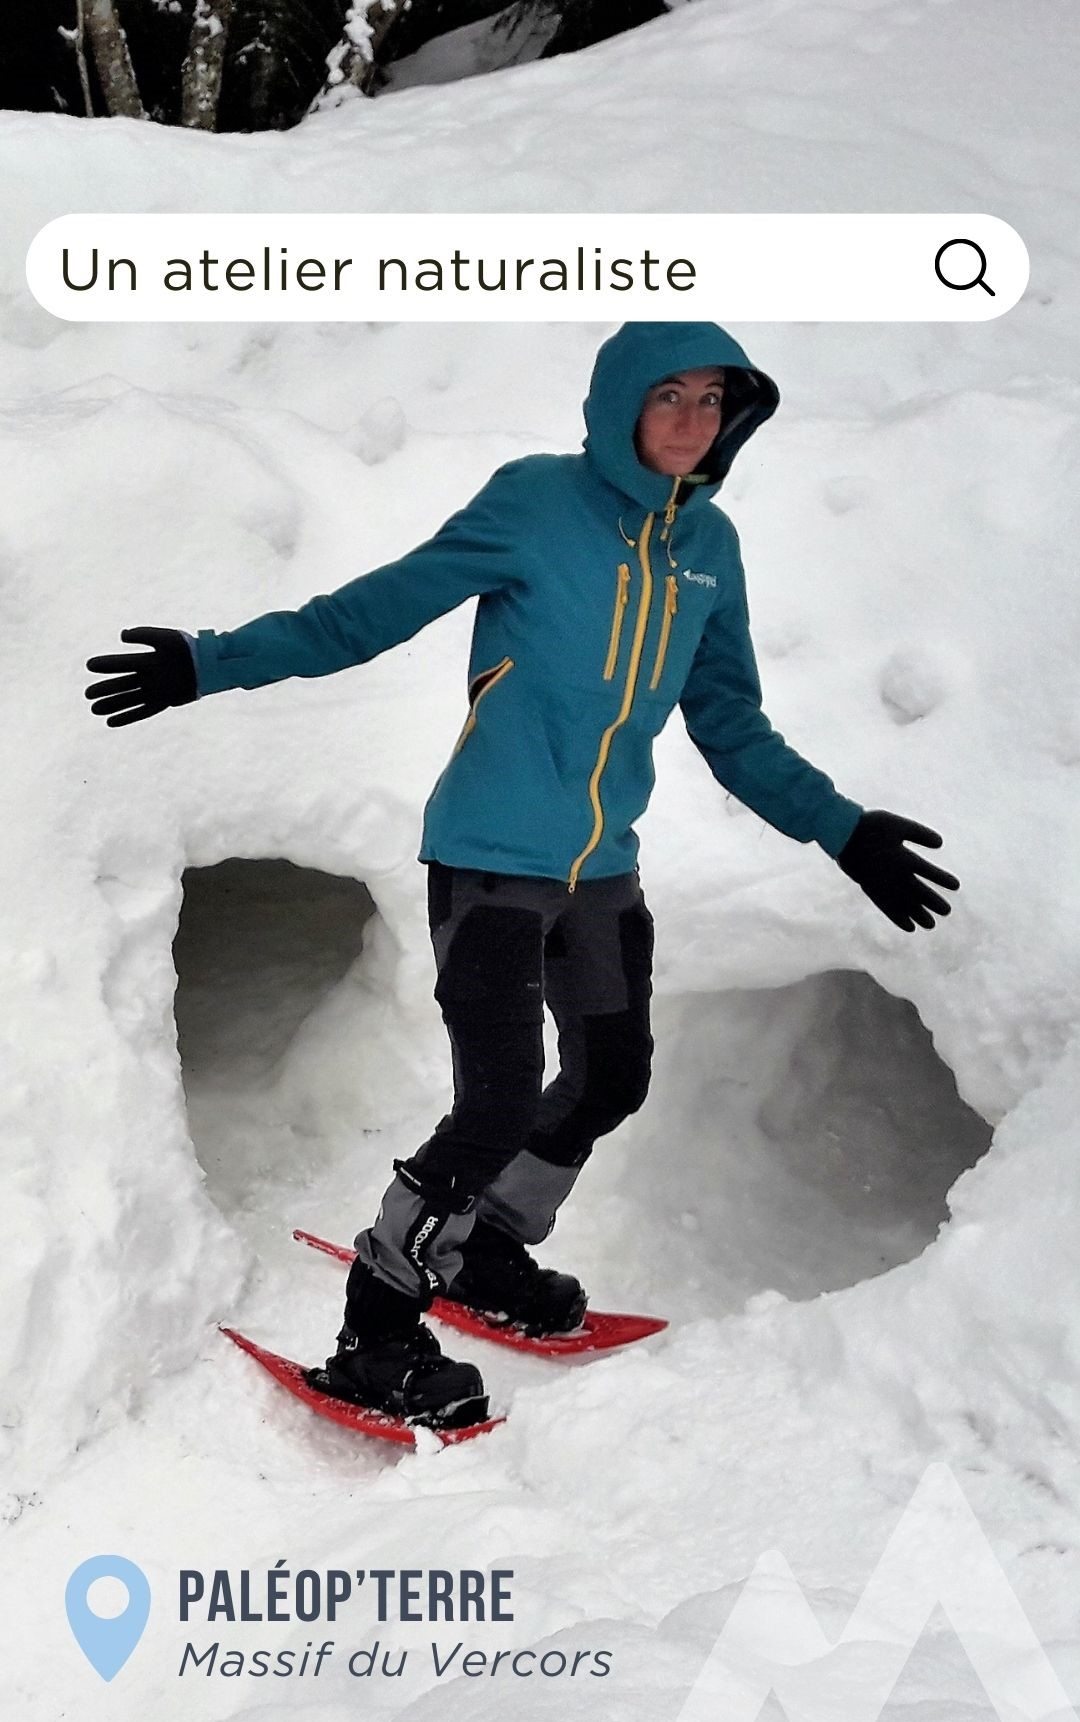 atelier naturaliste dans le vercors en hiver pour construire des igloos dans la neige